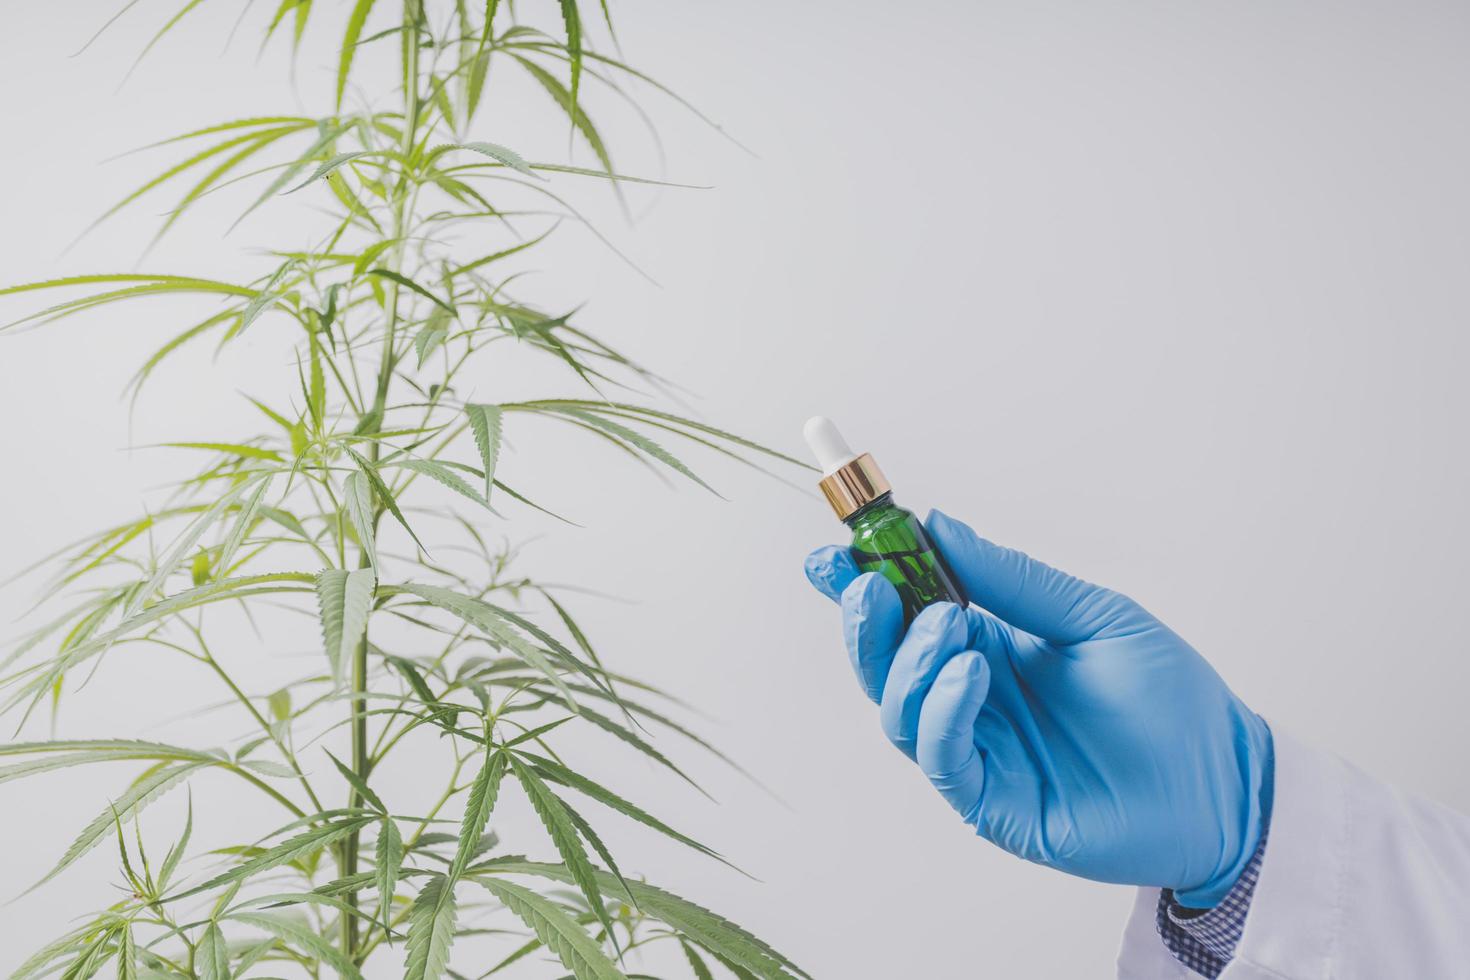 les chercheurs sur le cannabis font des expériences scientifiques. photo